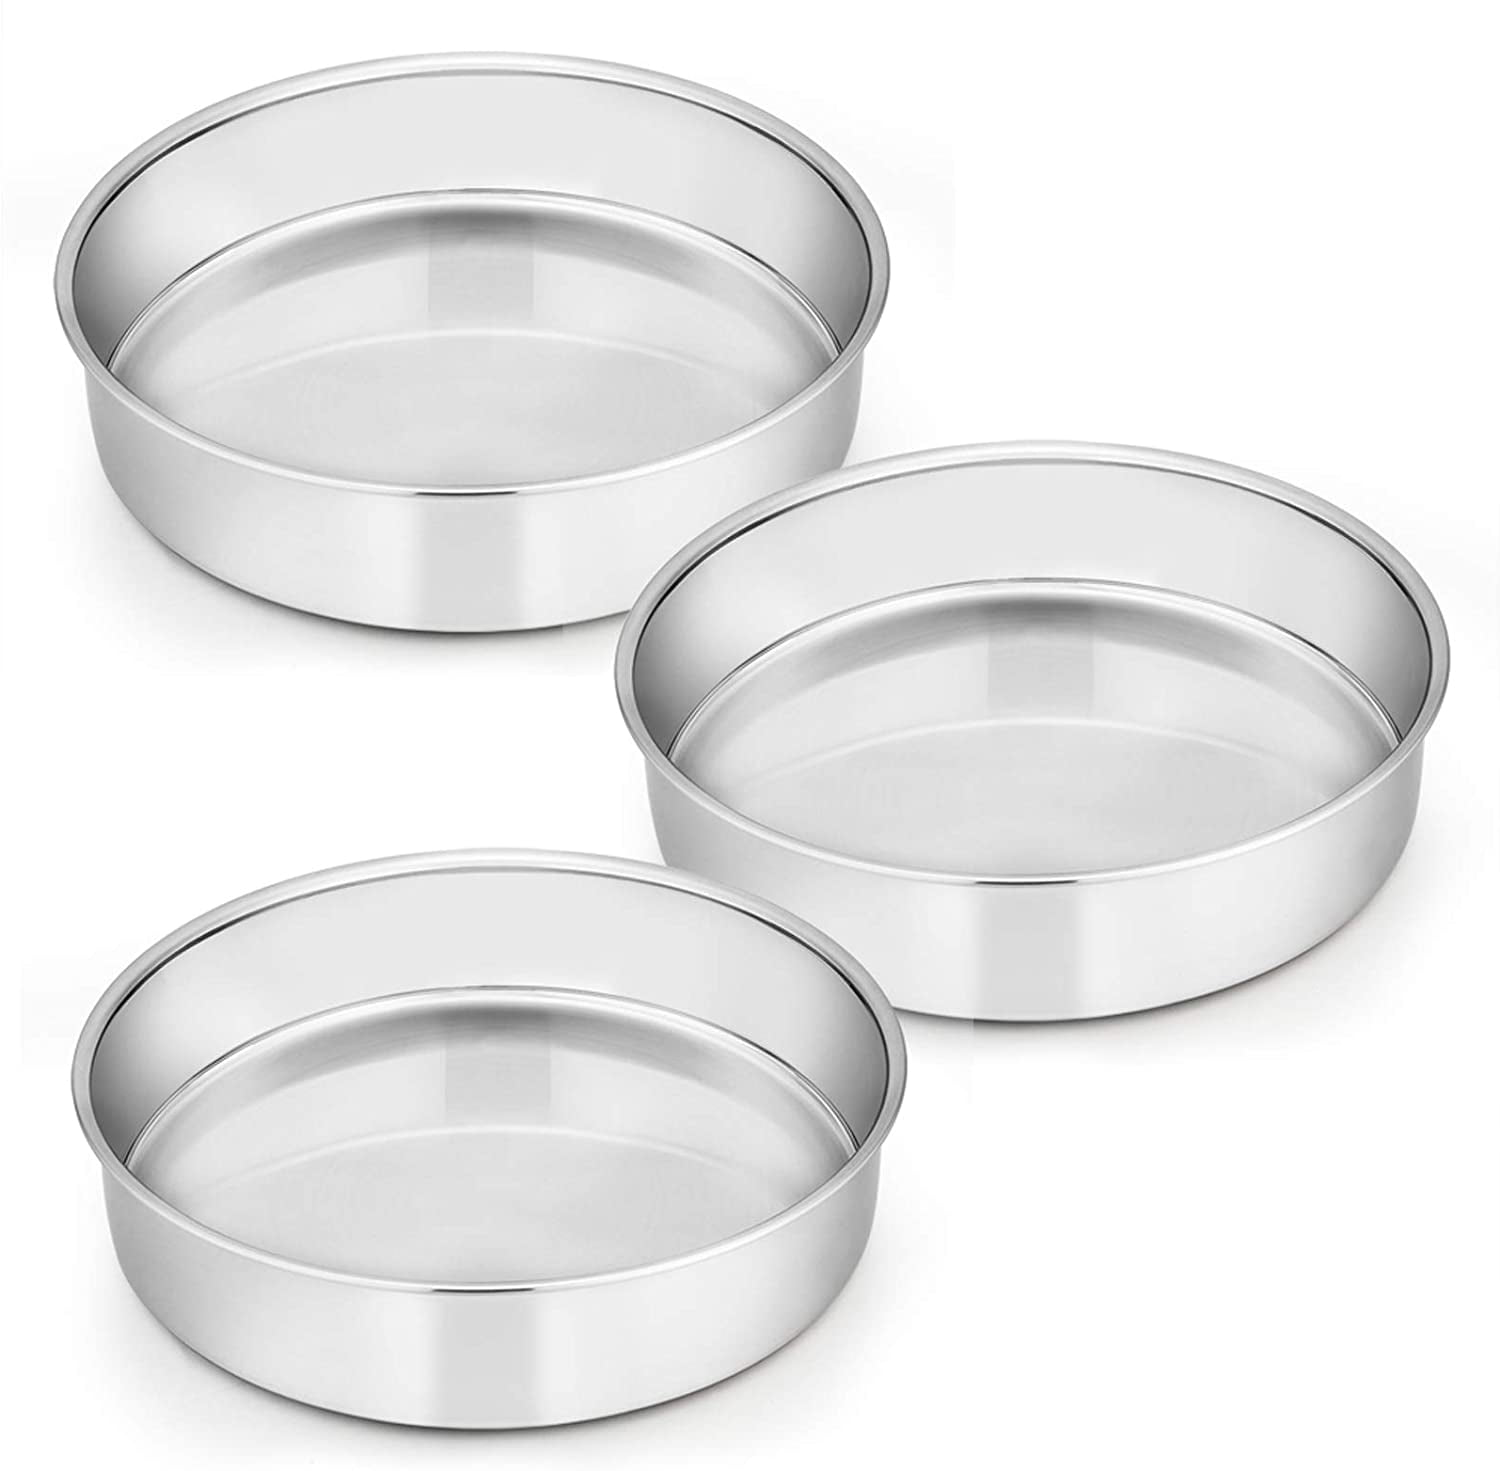 3, 8 Inch Stainless Steel Round Baking Pans Layer Cake Pans Tin Set AIKKIL Cake Pan Non Toxic & Healthy Mirror Polished & Dishwasher Safe 